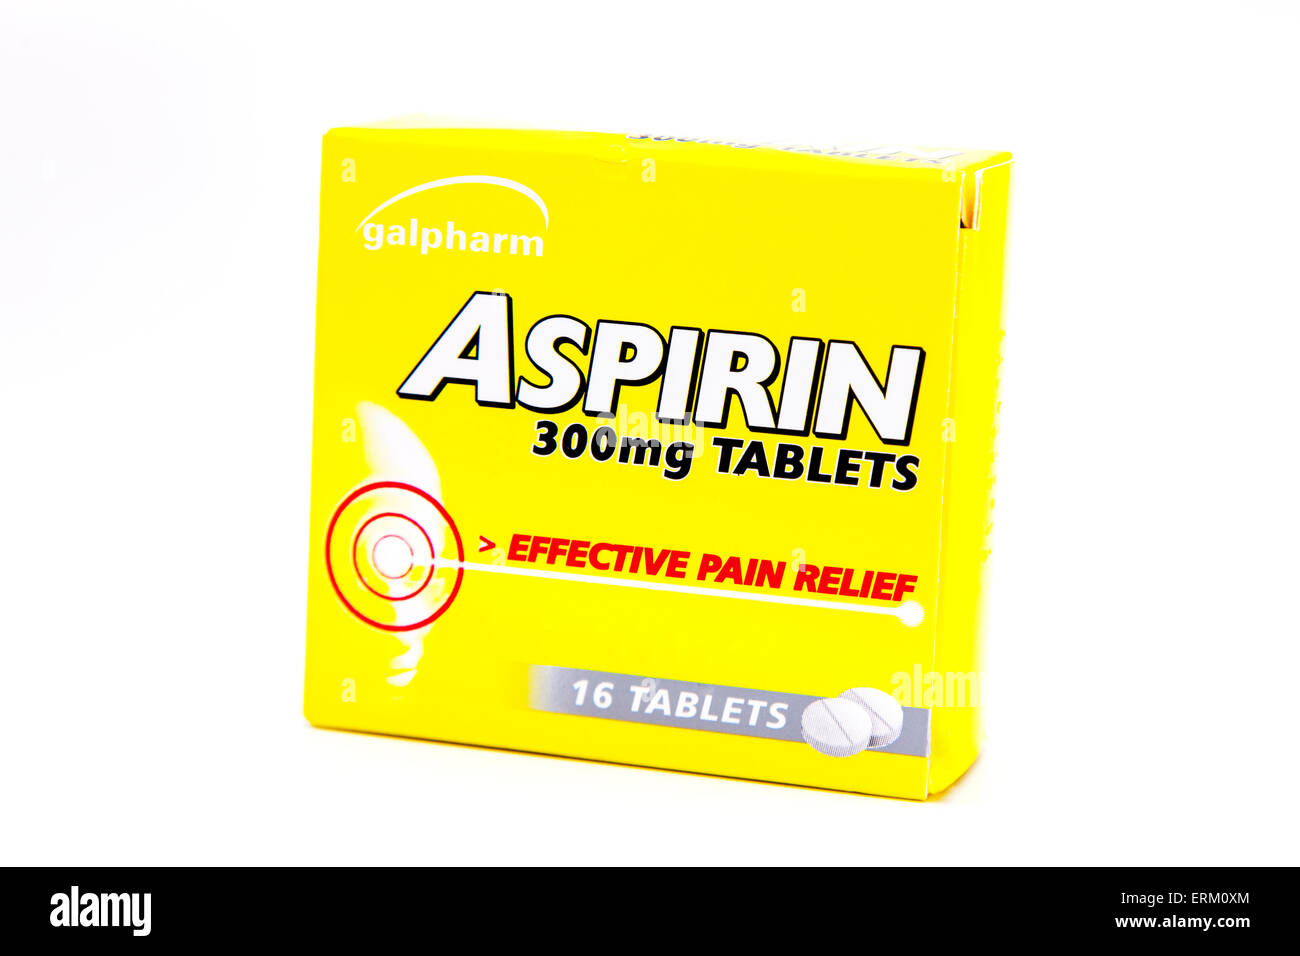 Aspirin Schmerzlinderung beheben Tabletten Karton Kapseln Box Pack Paket isolierten Ausschnitt ausschneiden weißen Hintergrund Kopie Raum studio Stockfoto